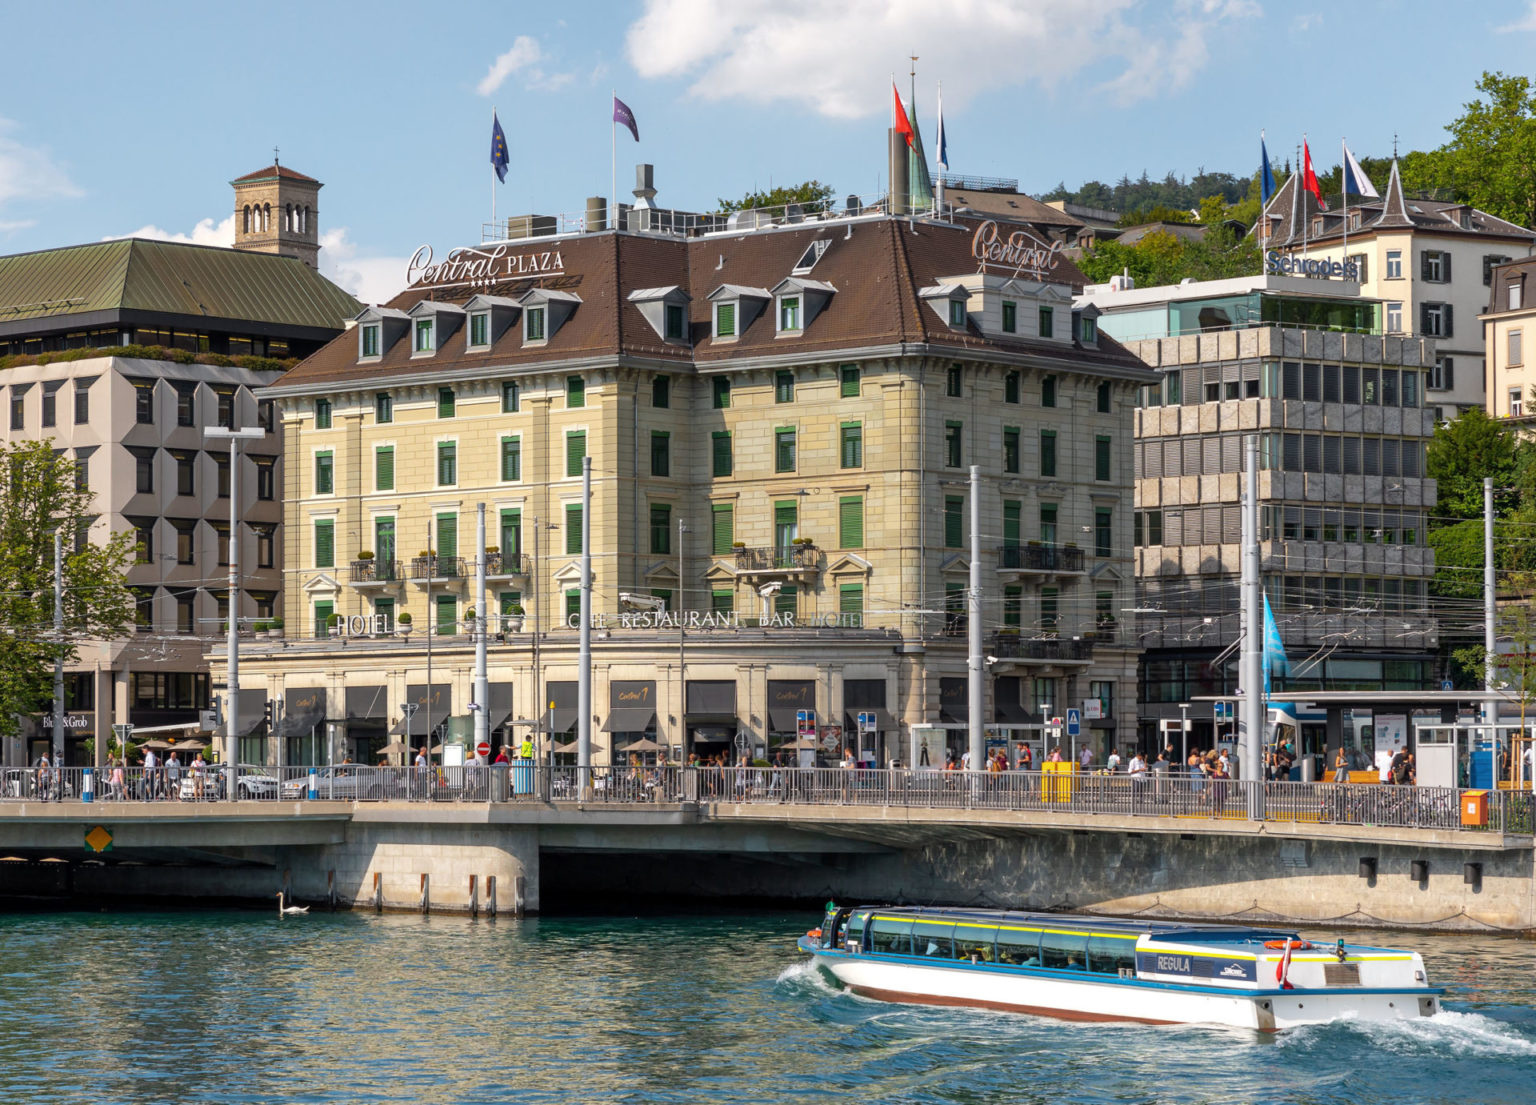 Central Plaza Hotel Zurich.